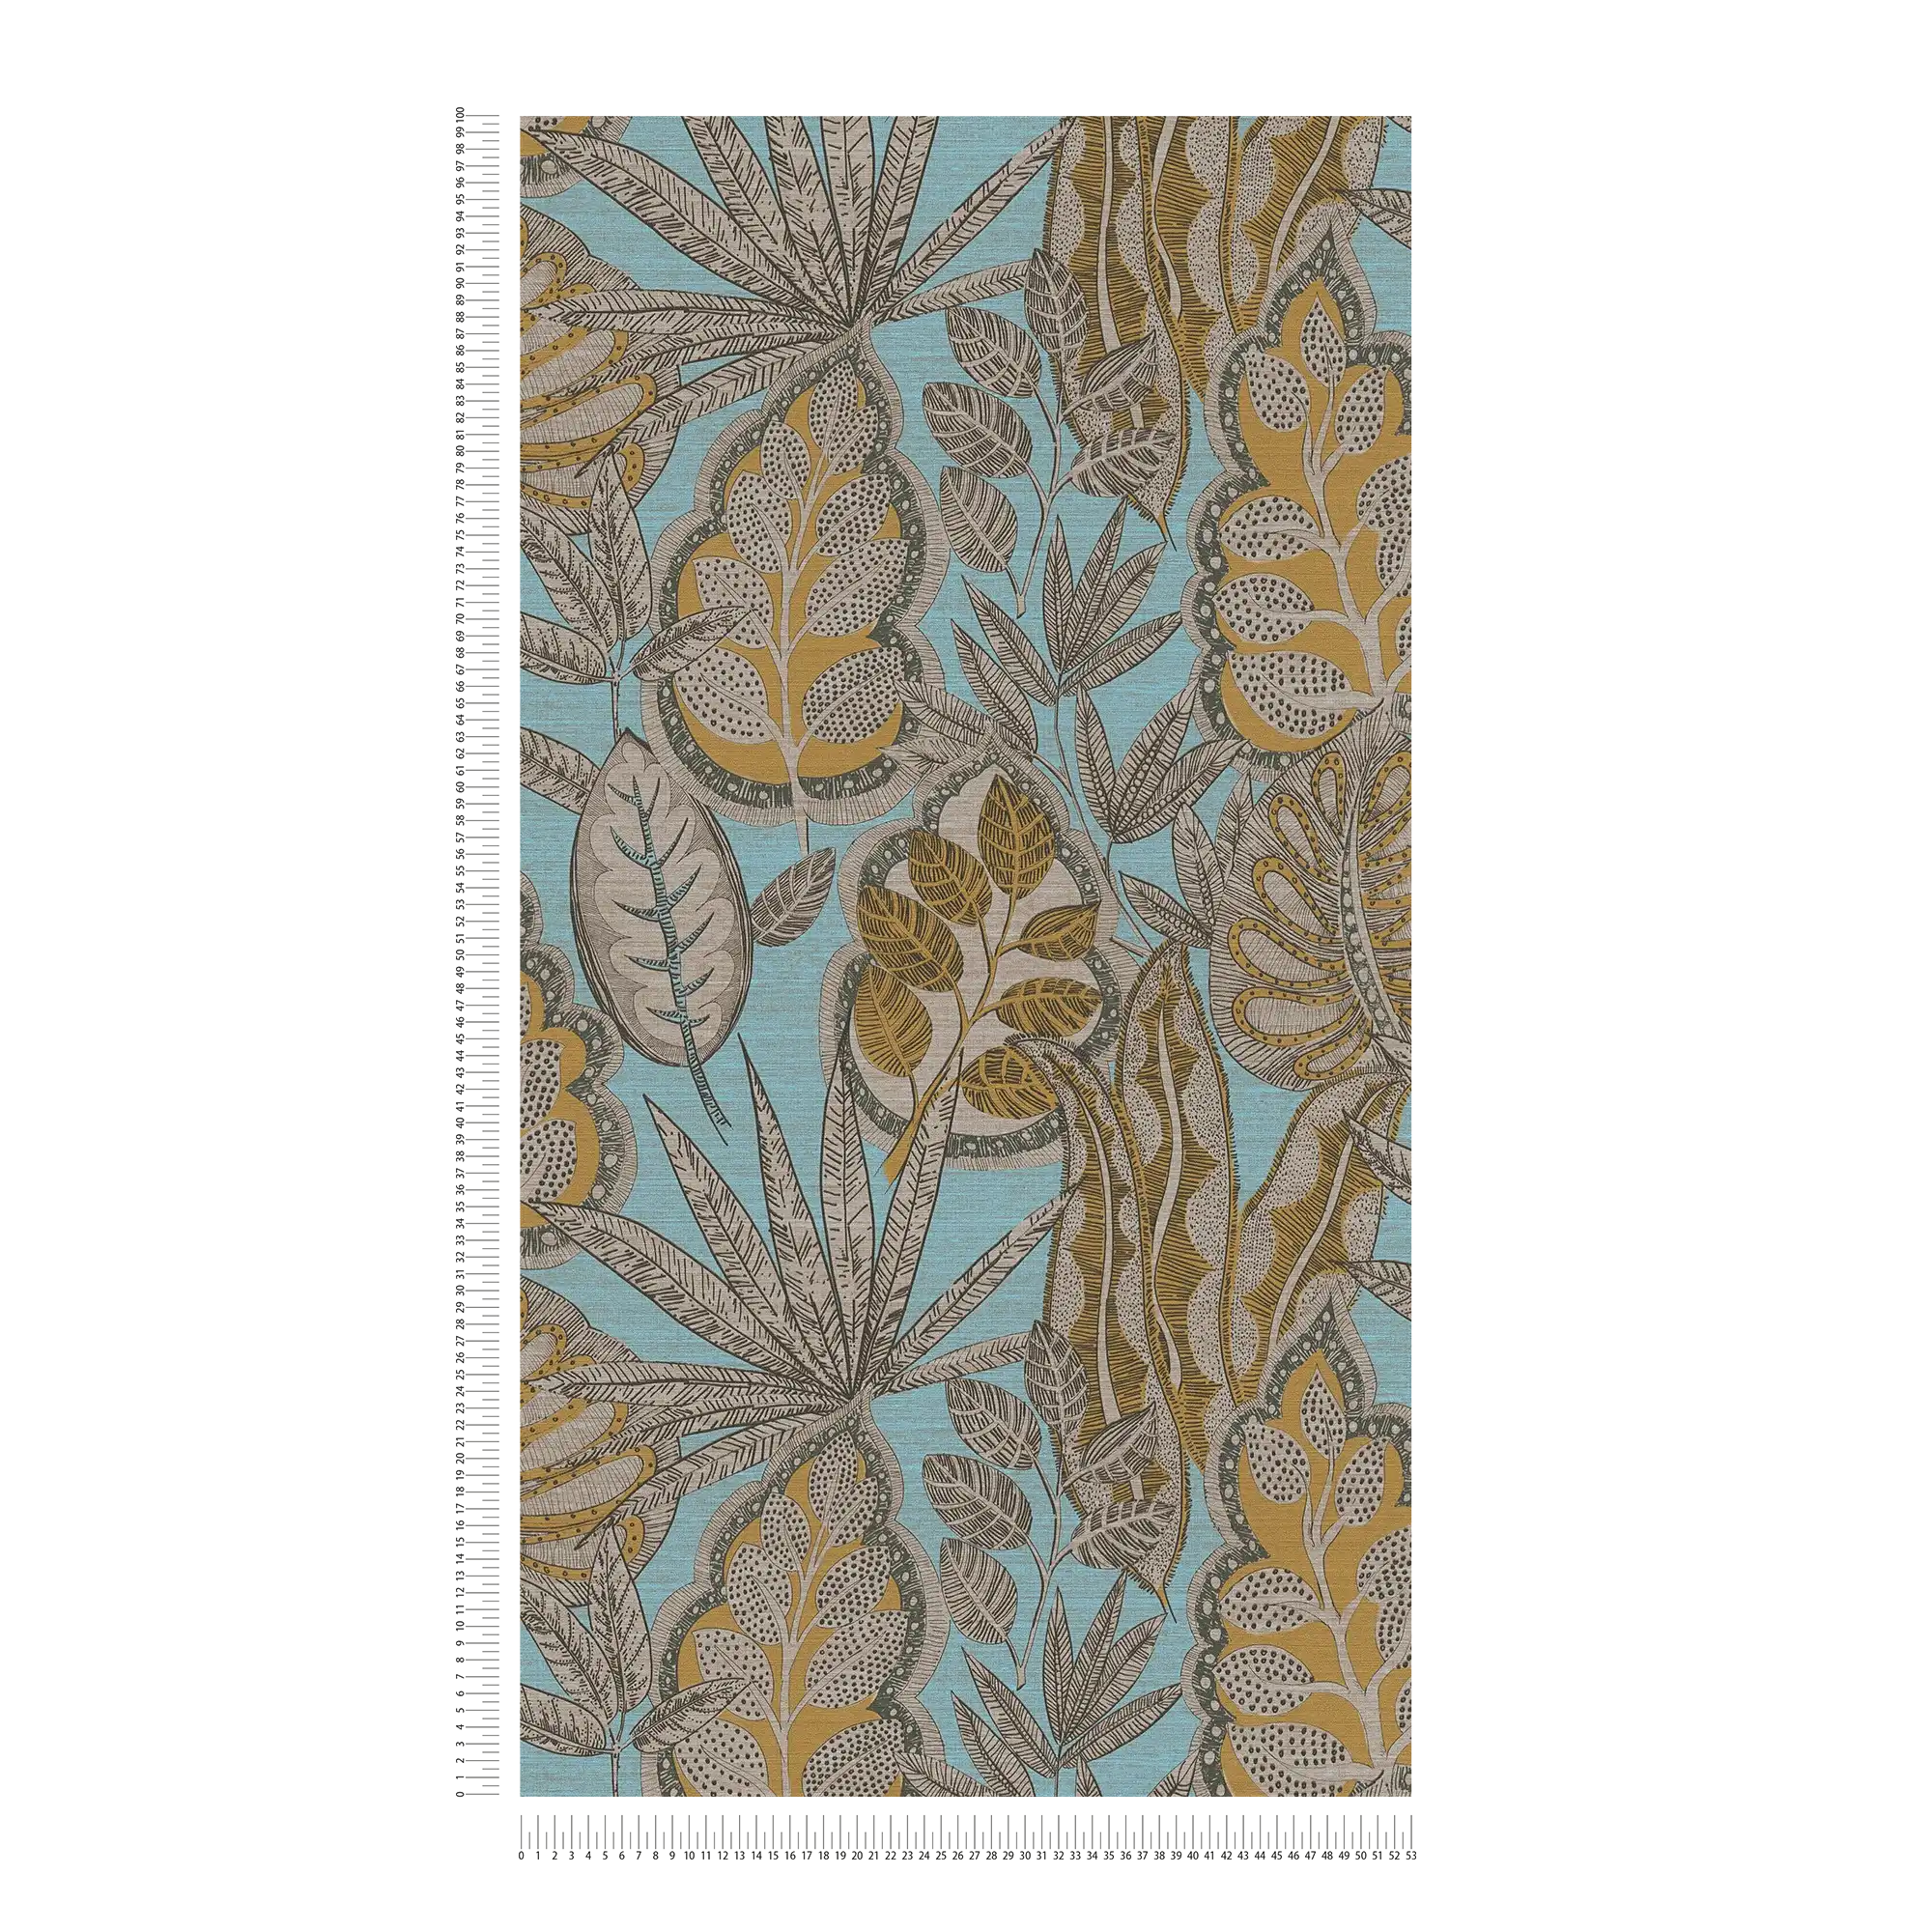             papier peint en papier intissé floral de style graphique à texture légère, mat - bleu clair, jaune, marron
        